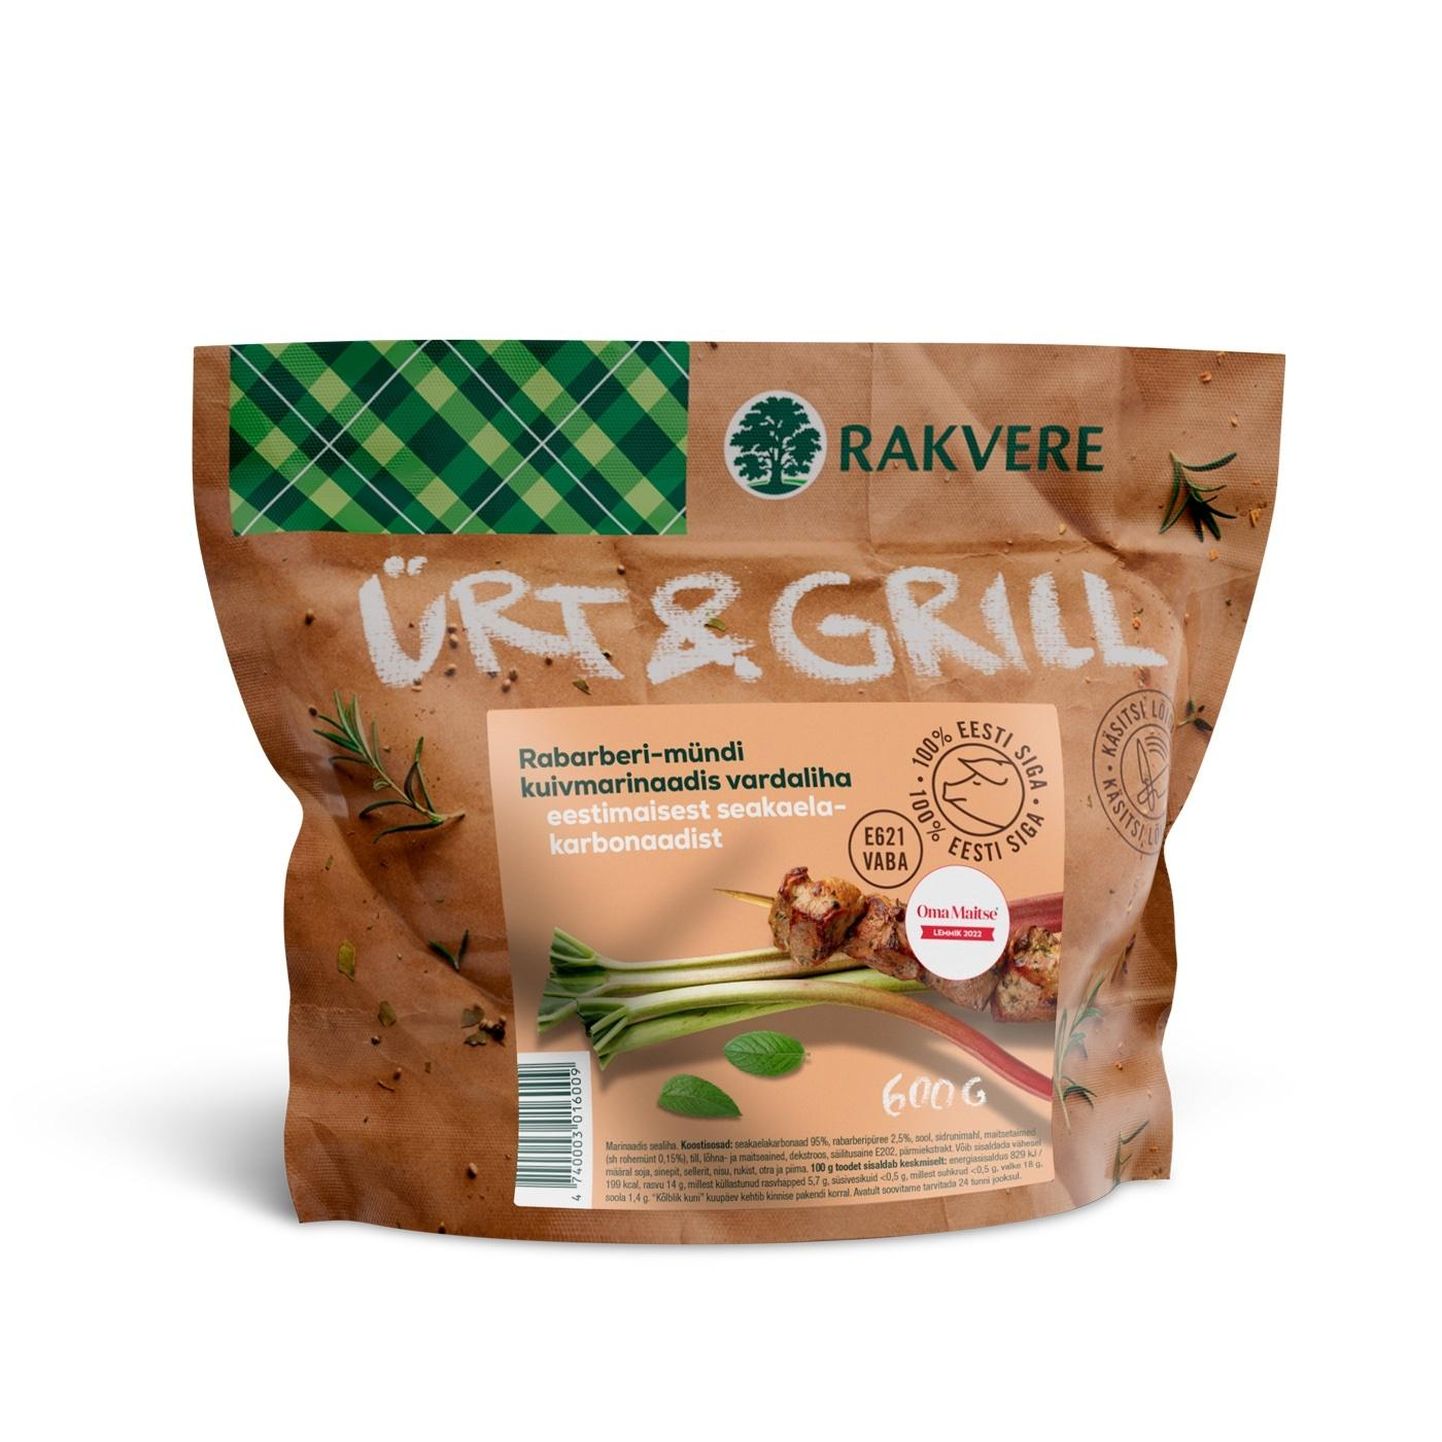 Eesti parimaks toiduaineks valiti Rakvere Ürt & Grill rabarberi-mündi vardaliha.